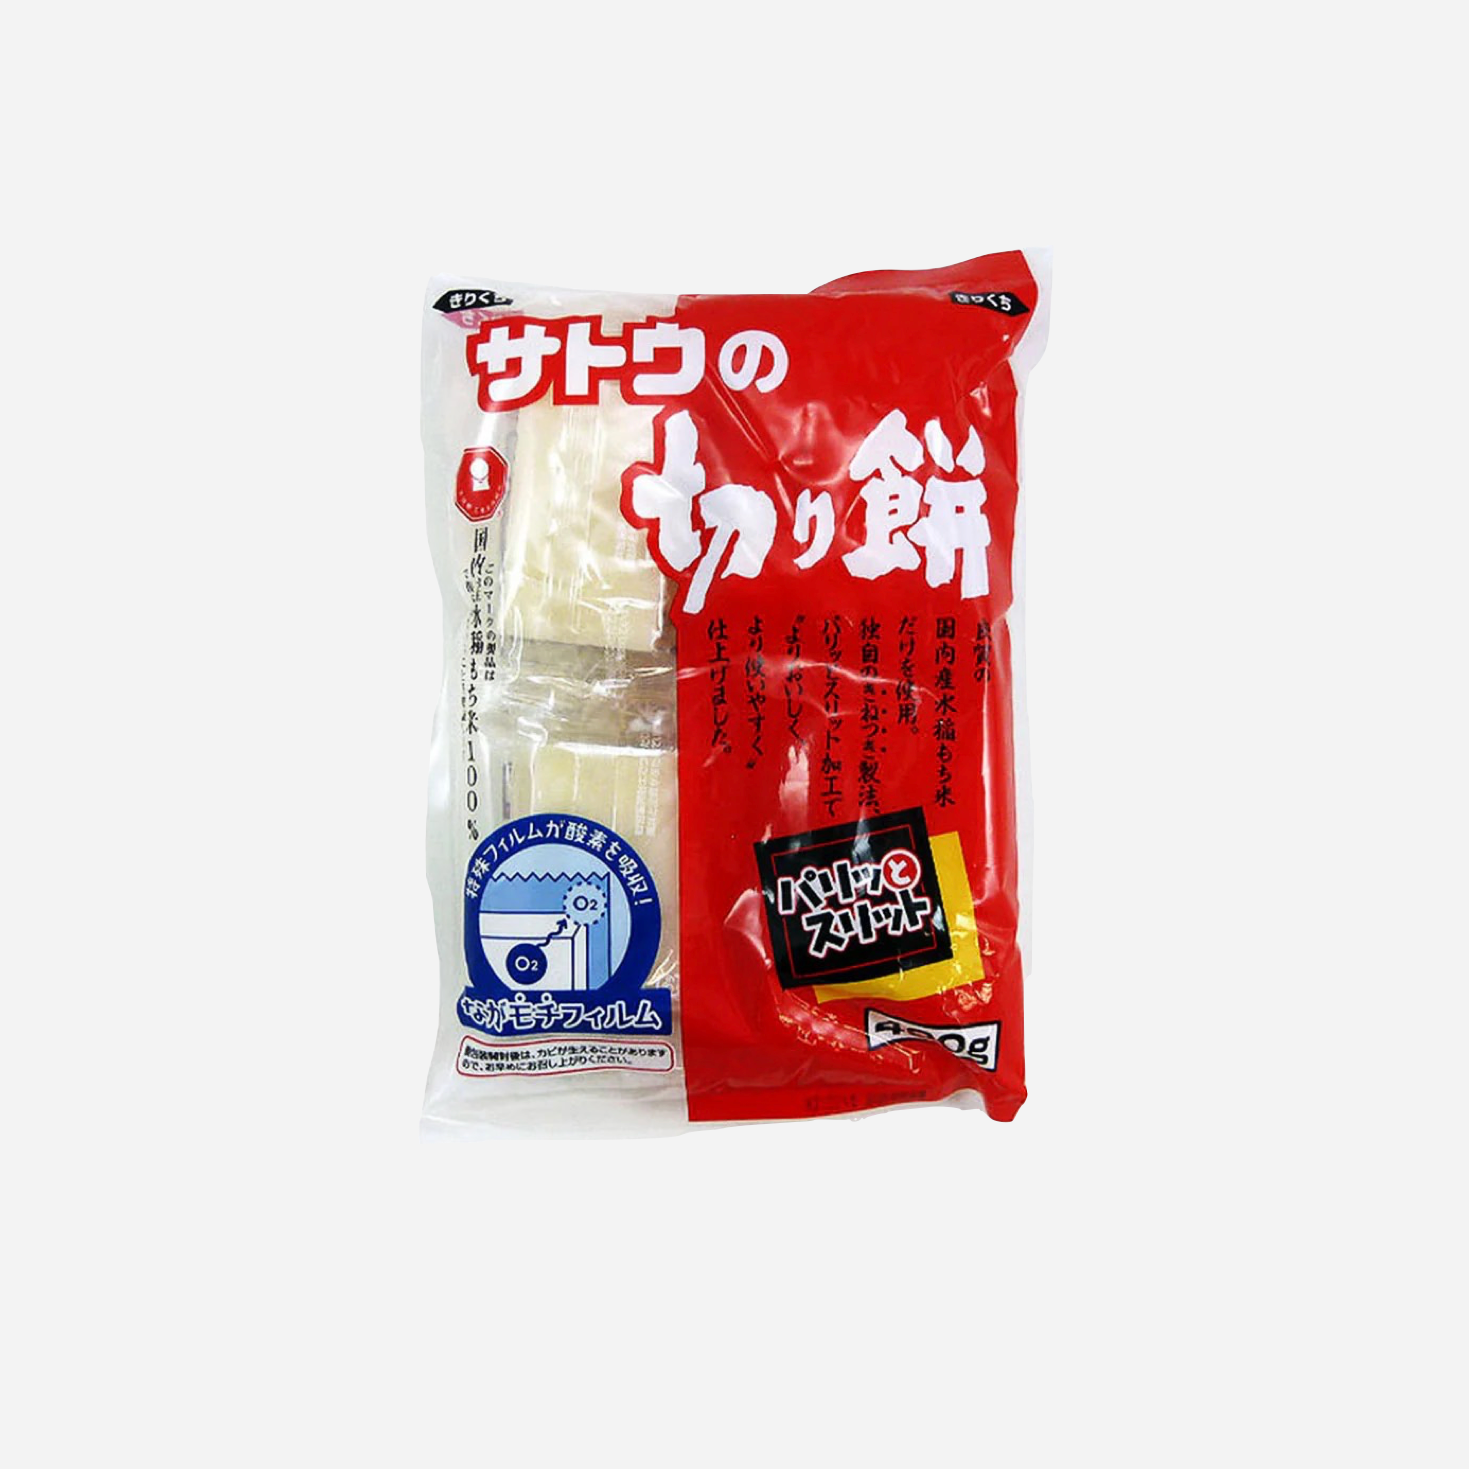 Kirimochi Tortini di riso